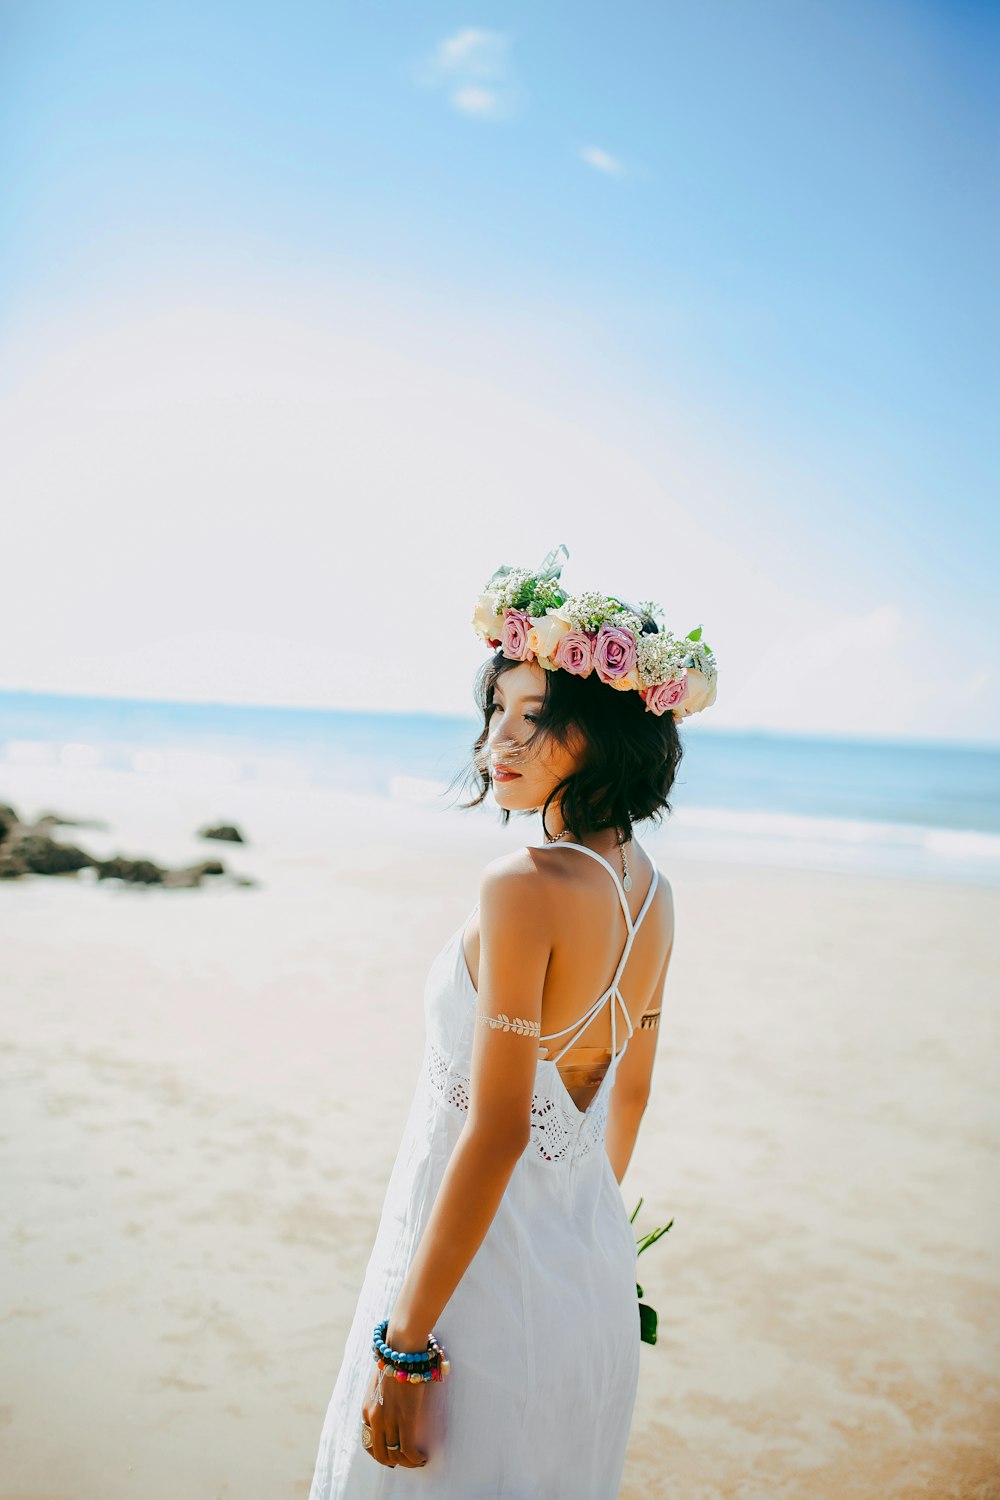 흰색 스파게티 스트랩 드레스를 입은 여자가 낮 사진 촬영 중 해변에 서 있습니다.